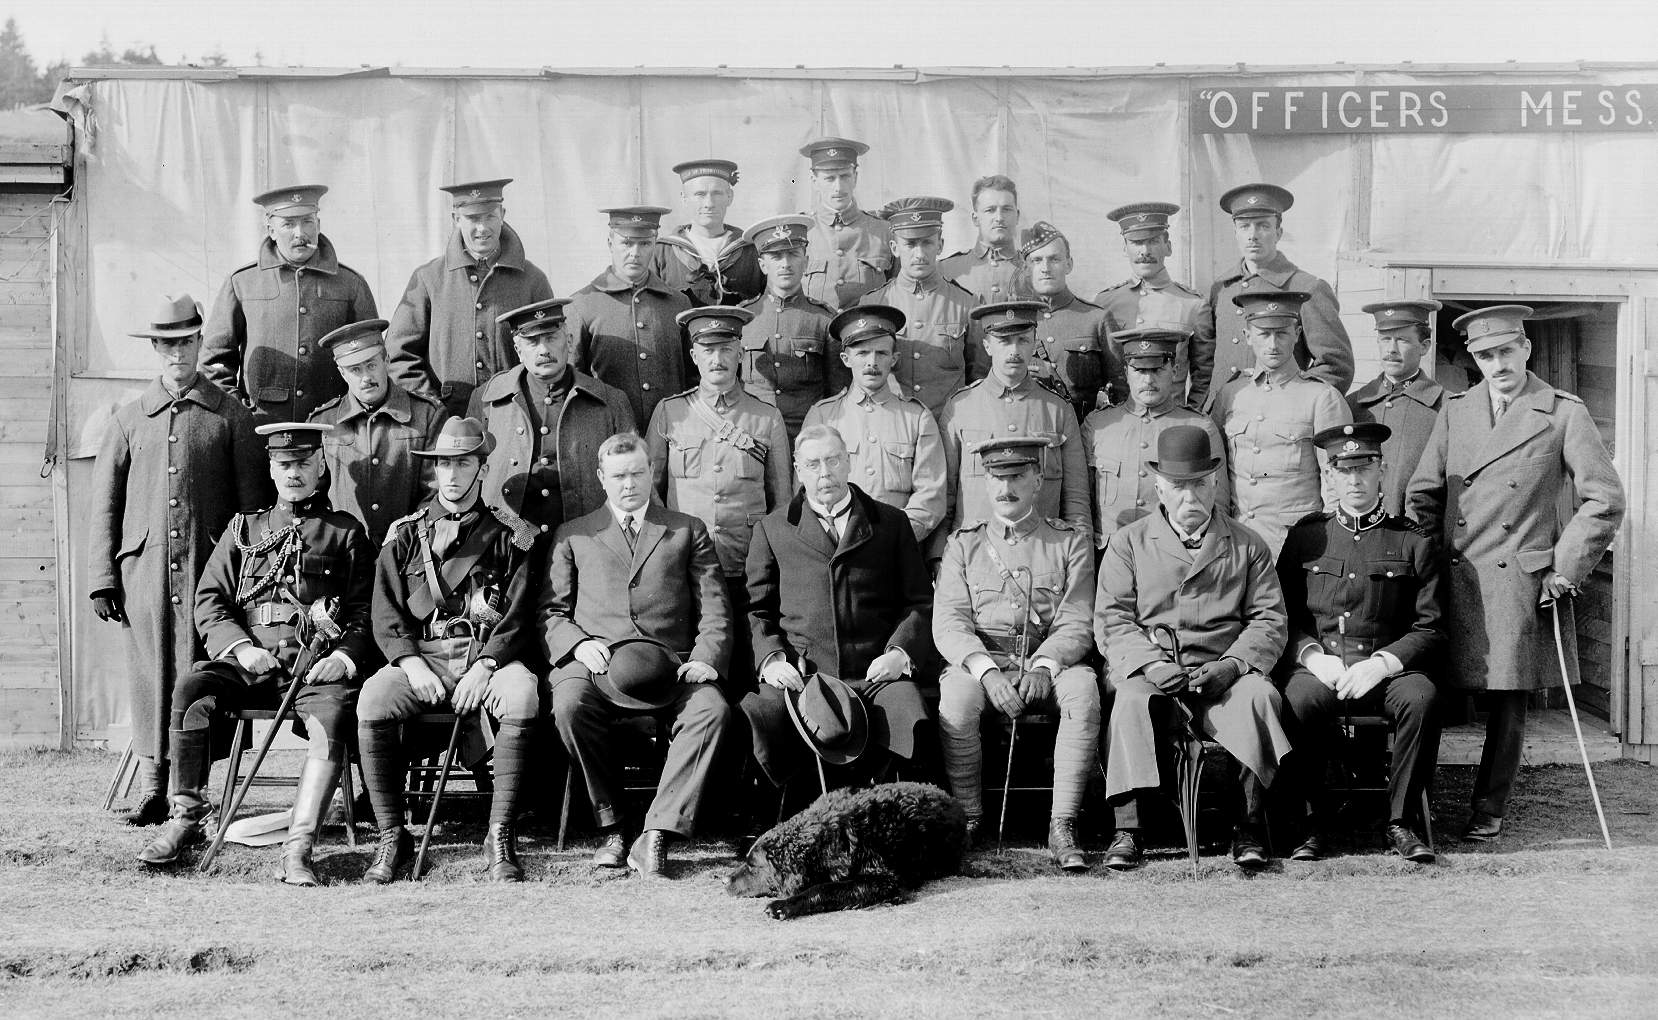 Sir Walter Davidson (1re rangée, au centre) avec des membres du Newfoundland Regiment, septembre 1914